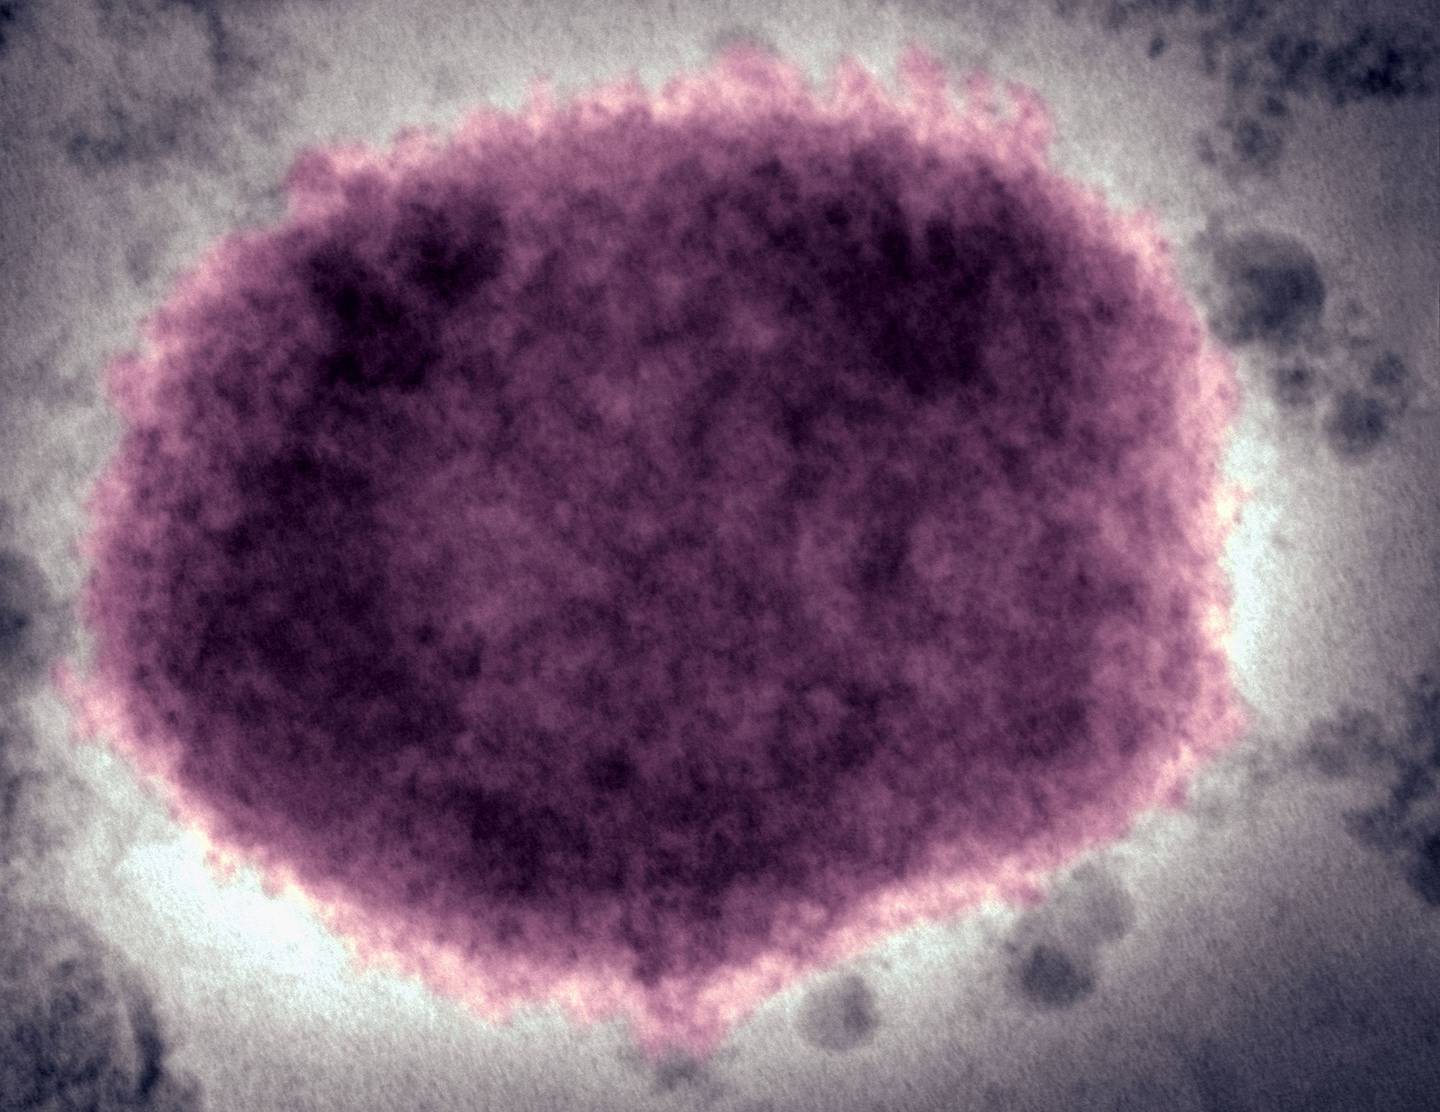 Virus de la viruela del mono en fluido vesicular humanodfd